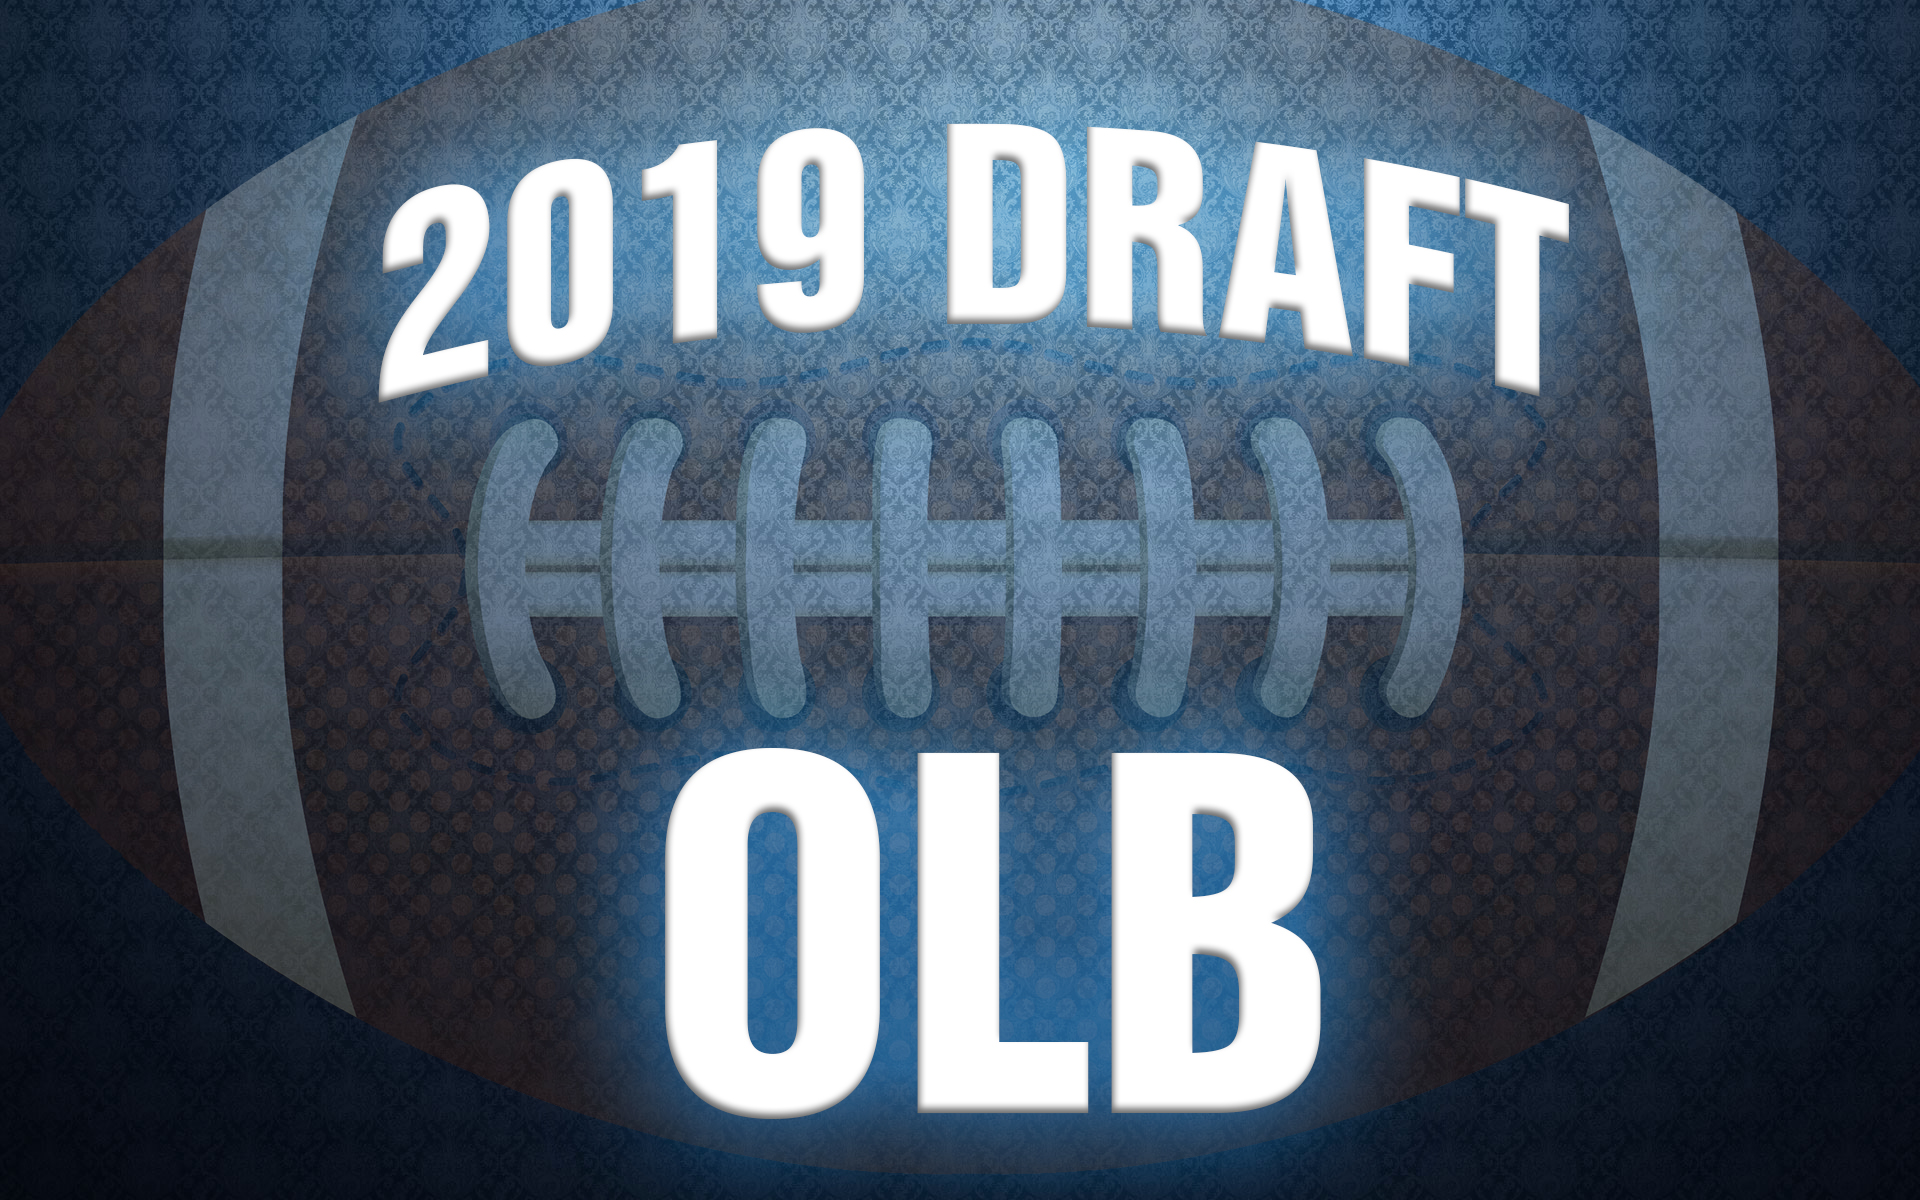 NFL Draft outside linebacker rankings 2019